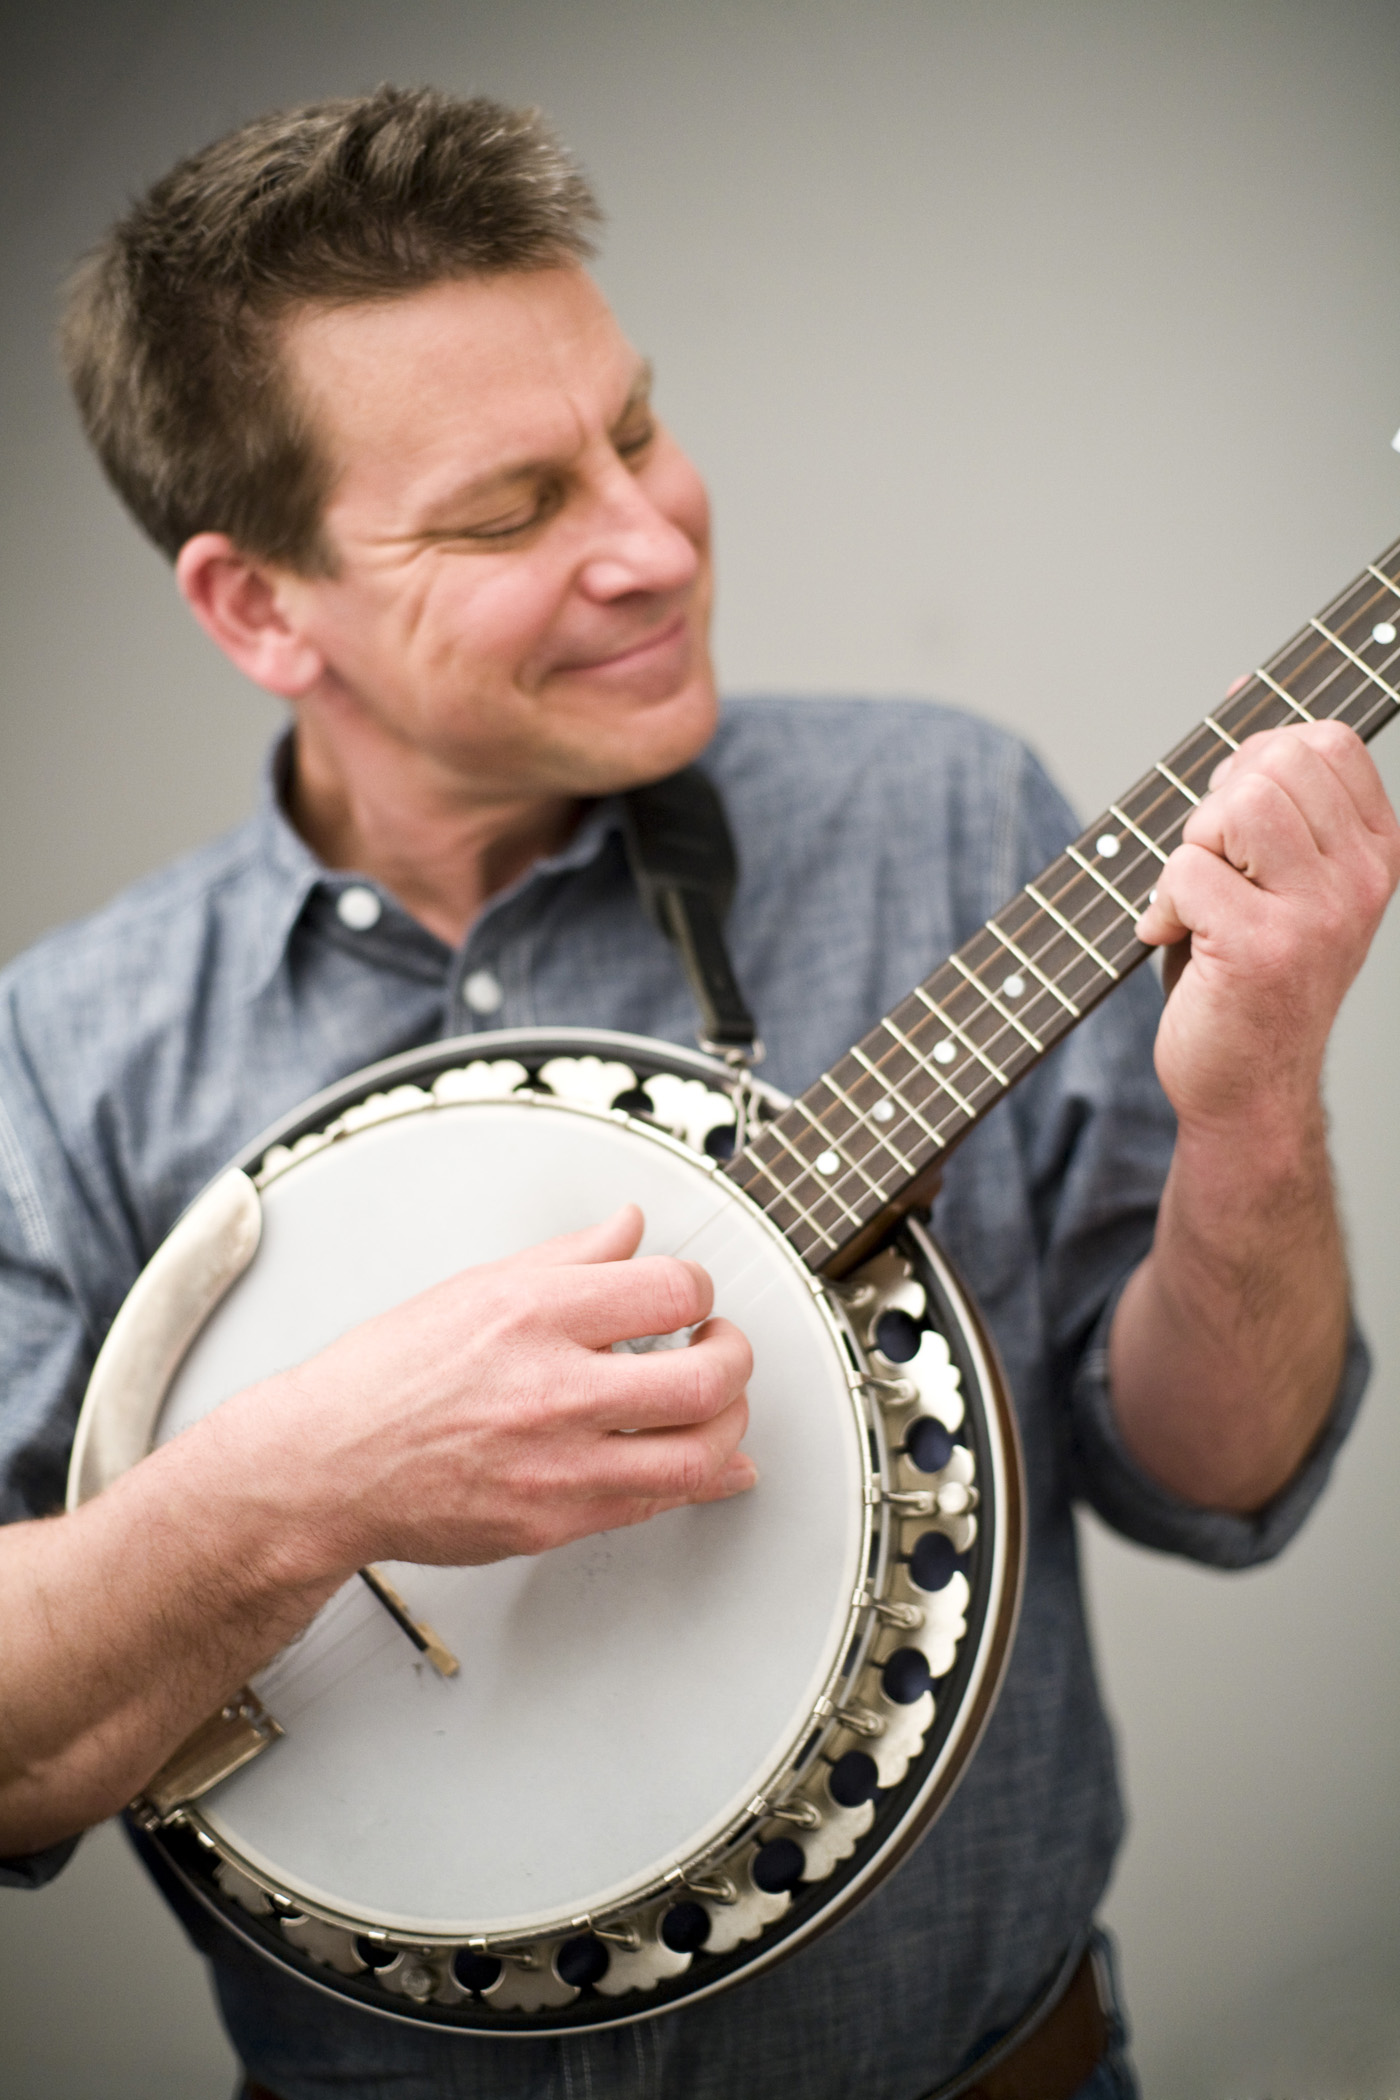 A photo of Jim Gill strumming his banjo